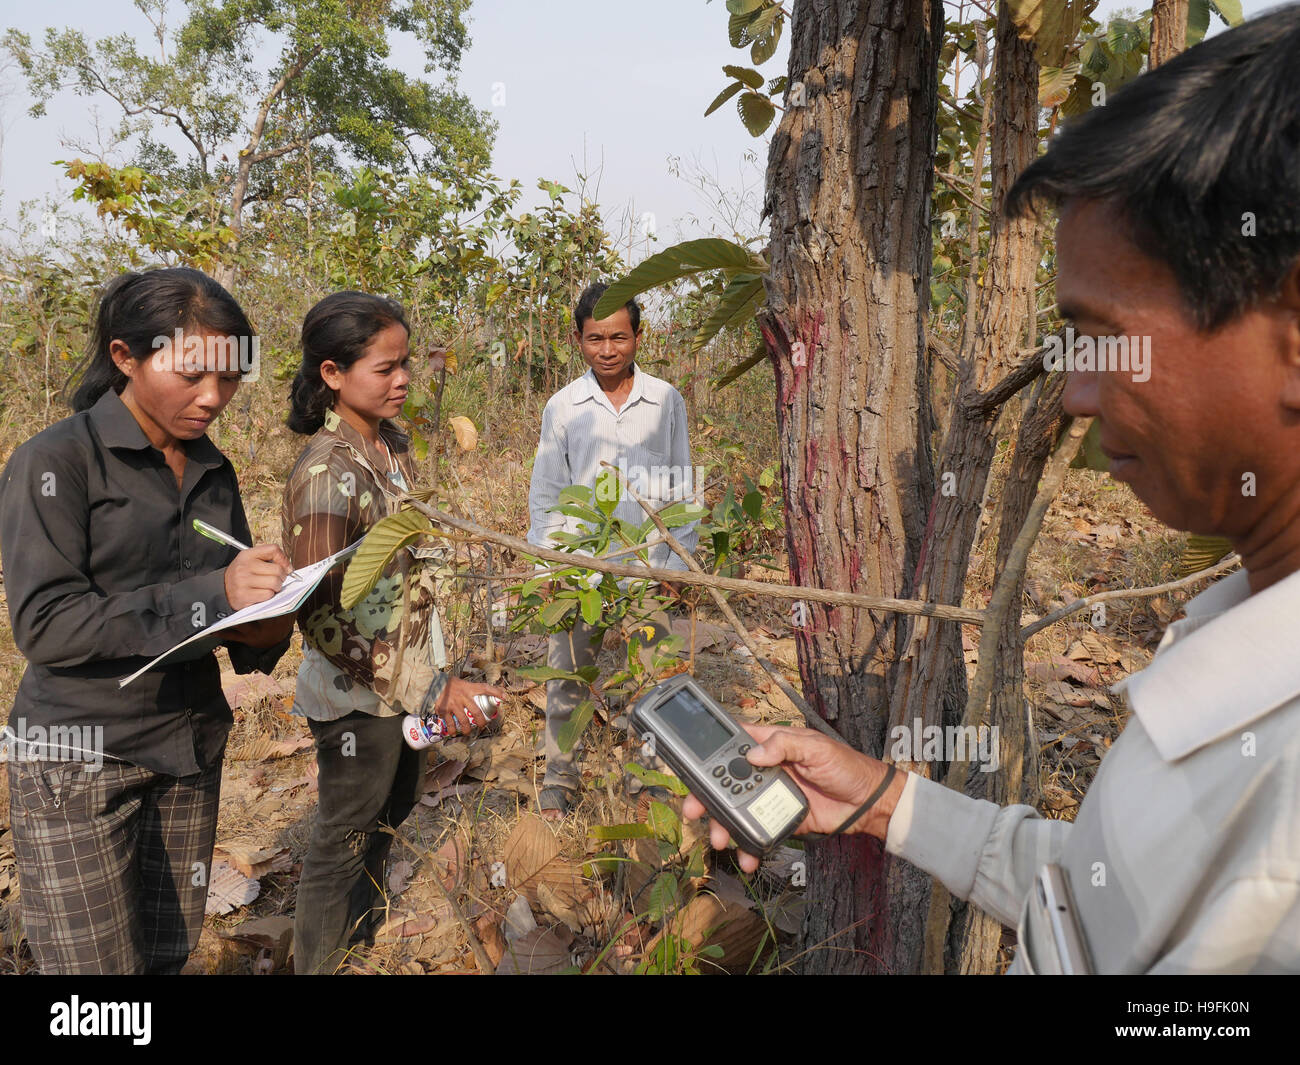 Kambodscha, Stung Treng Katot Dorf, von Brao Stamm bewohnt. Mit Hilfe von GPS um zu erarbeiten Landgrenzen zu Het Landtitel von Regierung. Sean Sprague Foto Stockfoto